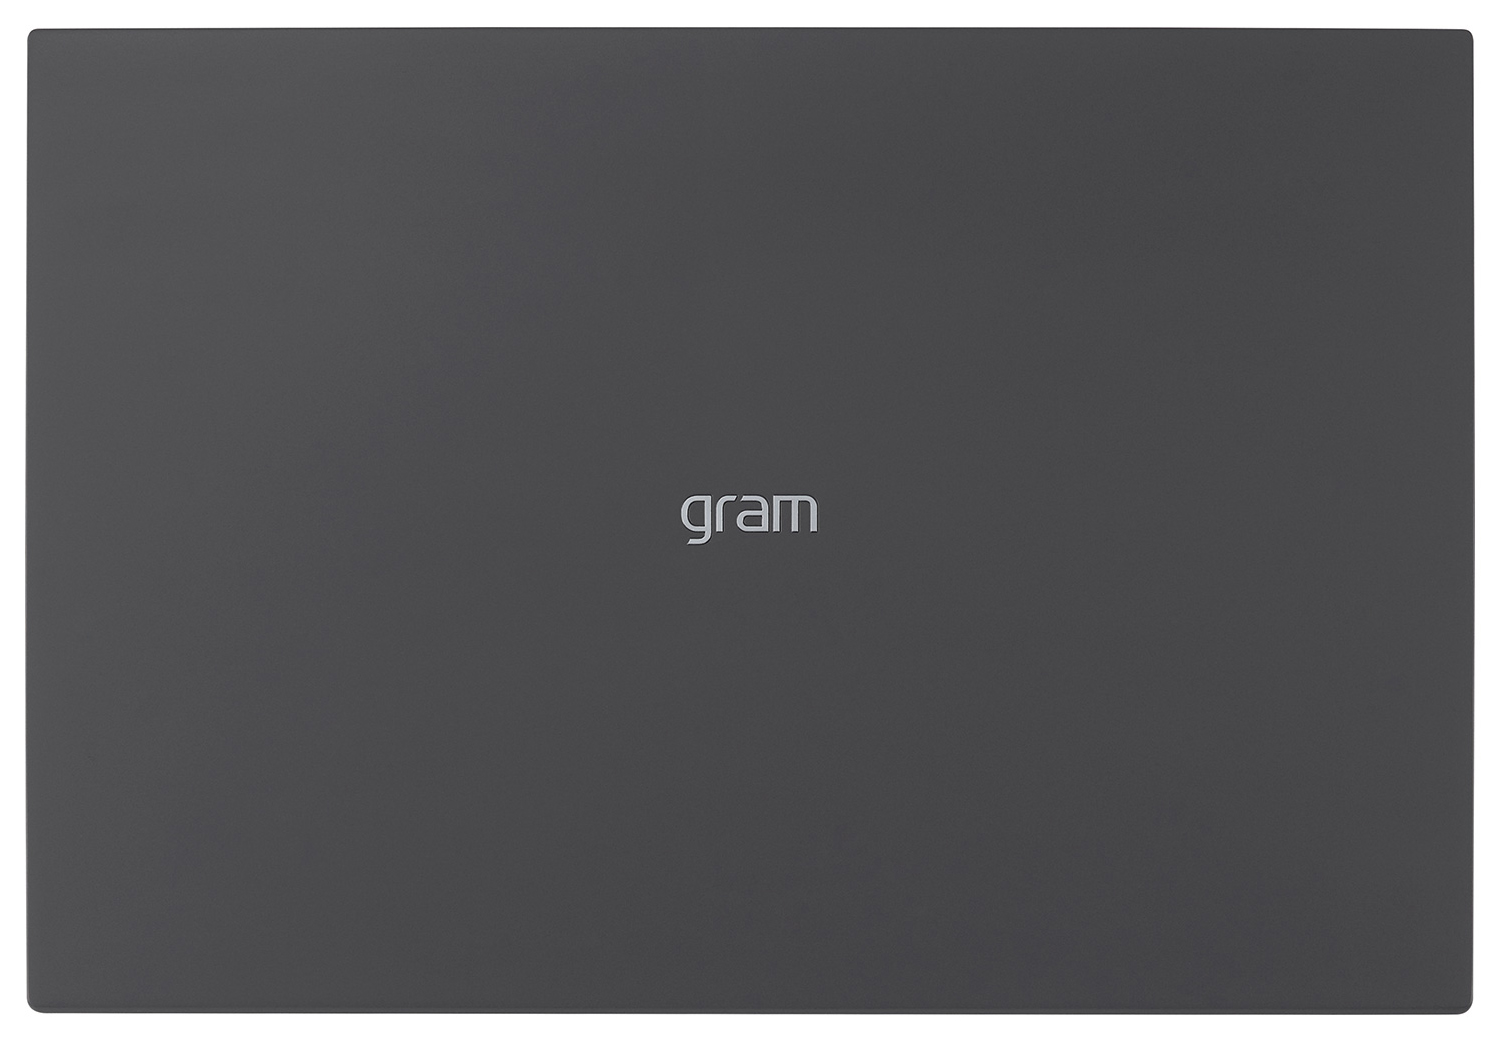 LG - ** B Grade ** Portátil LG gram 16Z90Q 16" i7 16GB 512GB W11 Pro